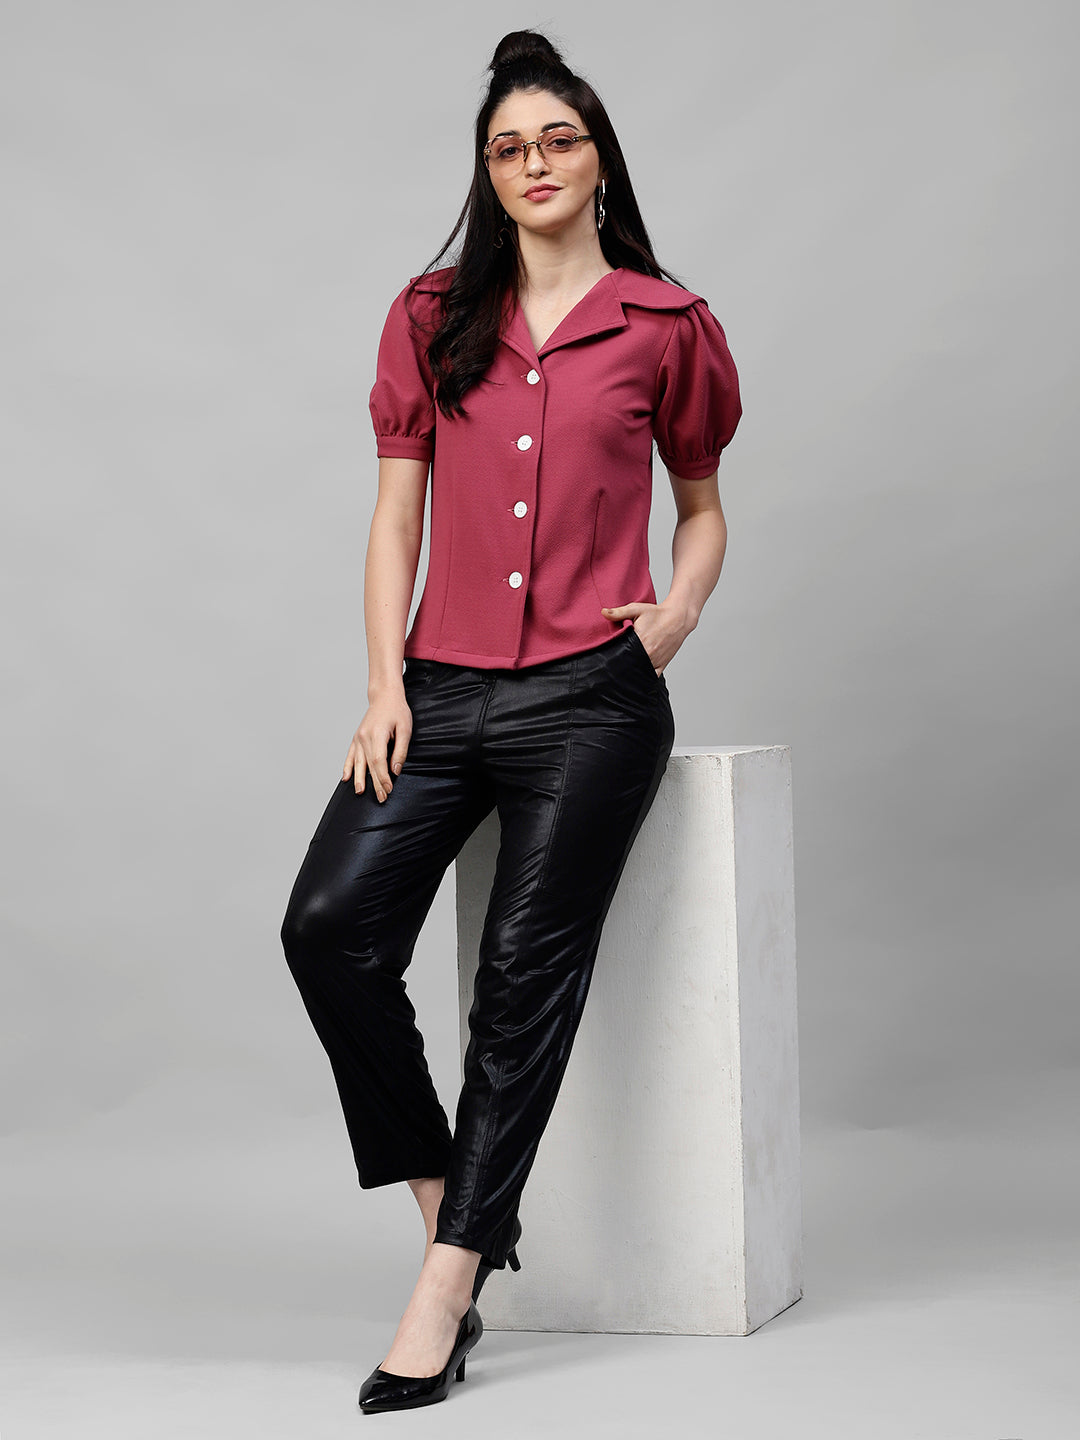 Athena Women Magenta Solid Shirt Style Top - Athena Lifestyle